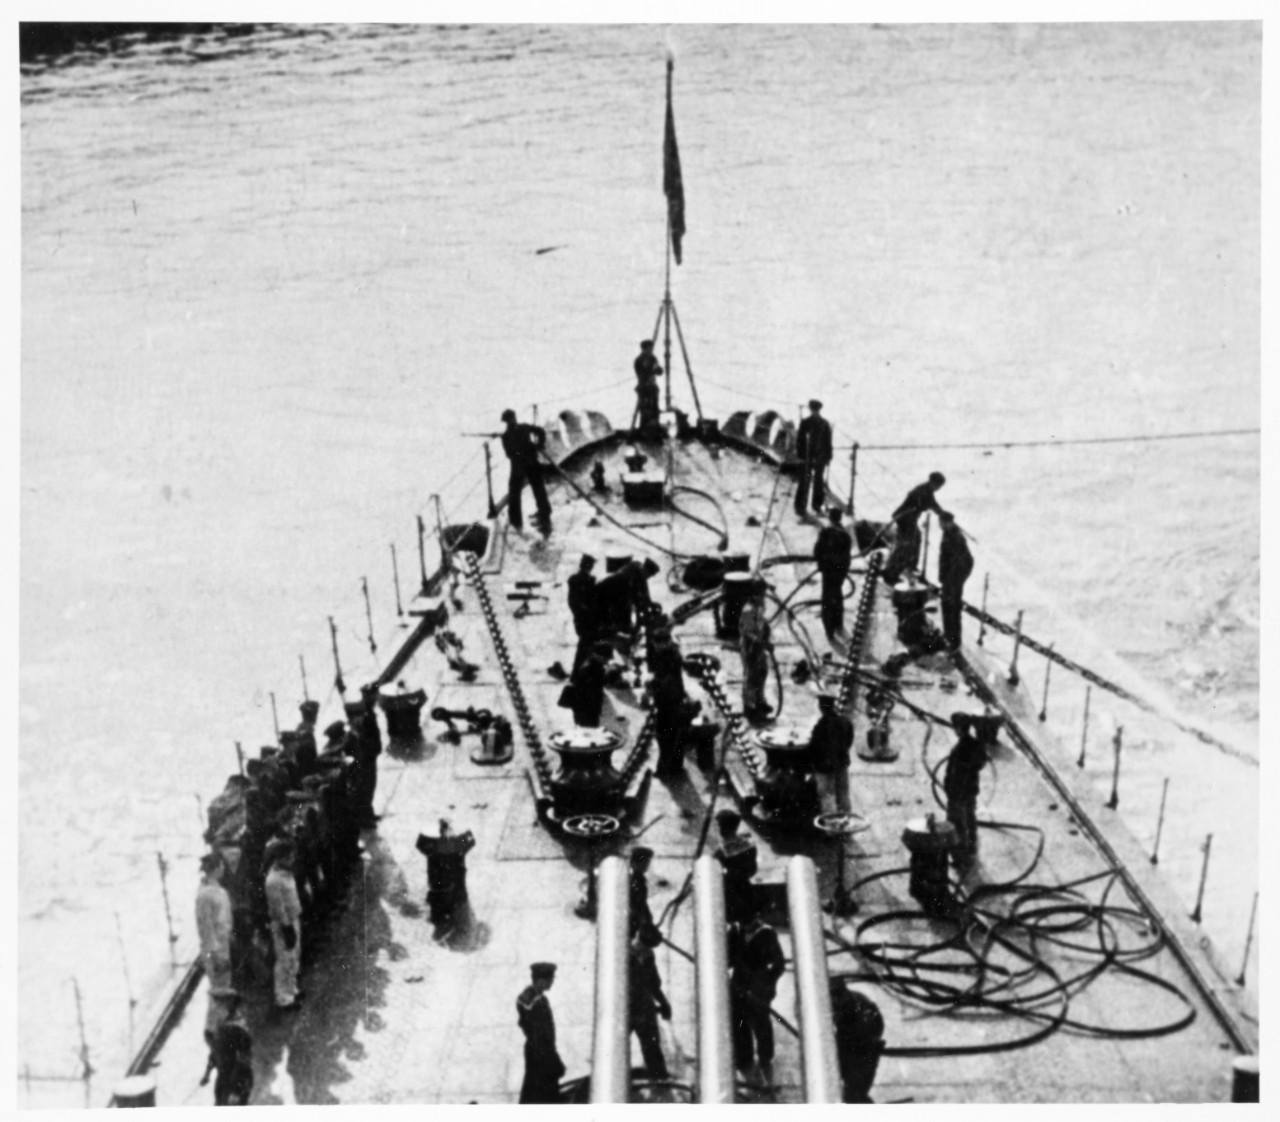 Anchor detail aboard a Soviet Kirov class heavy cruiser during World War II.